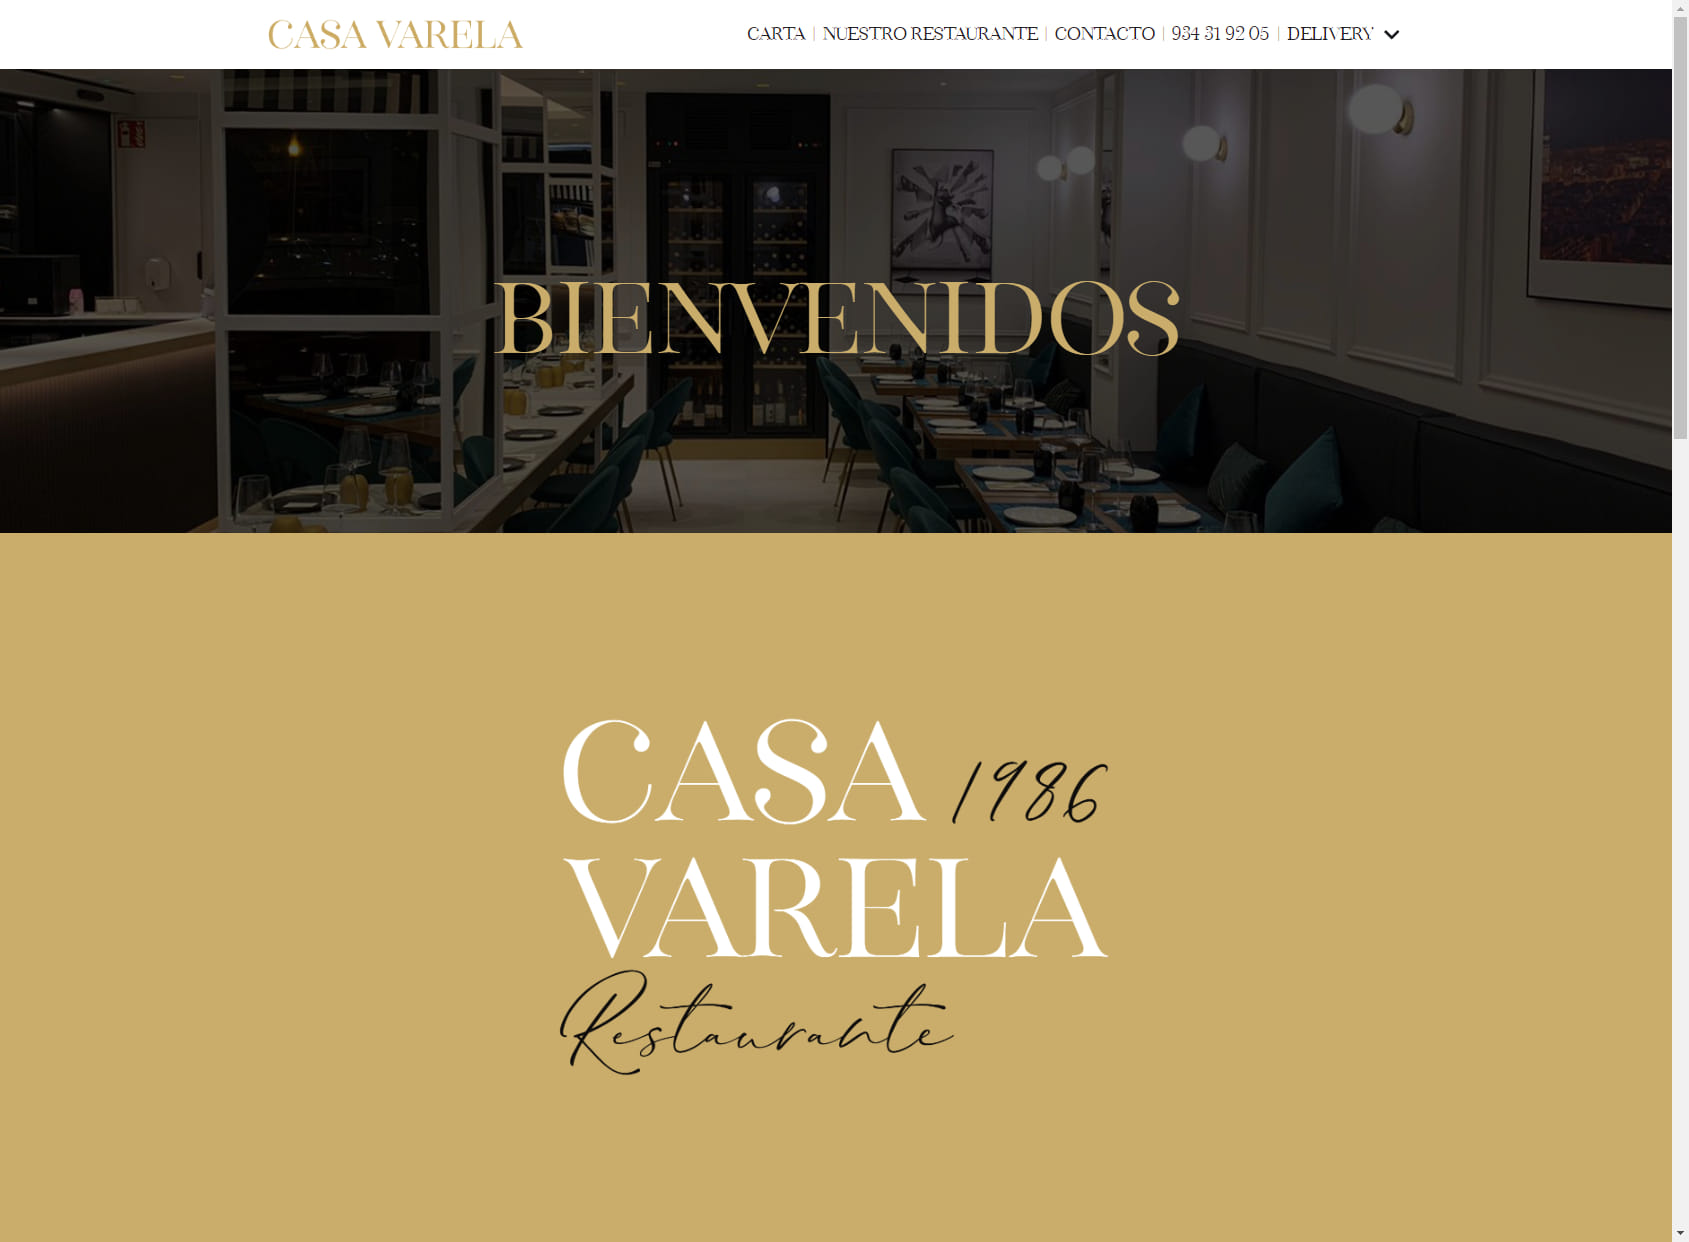 Restaurant Casa Varela 1986